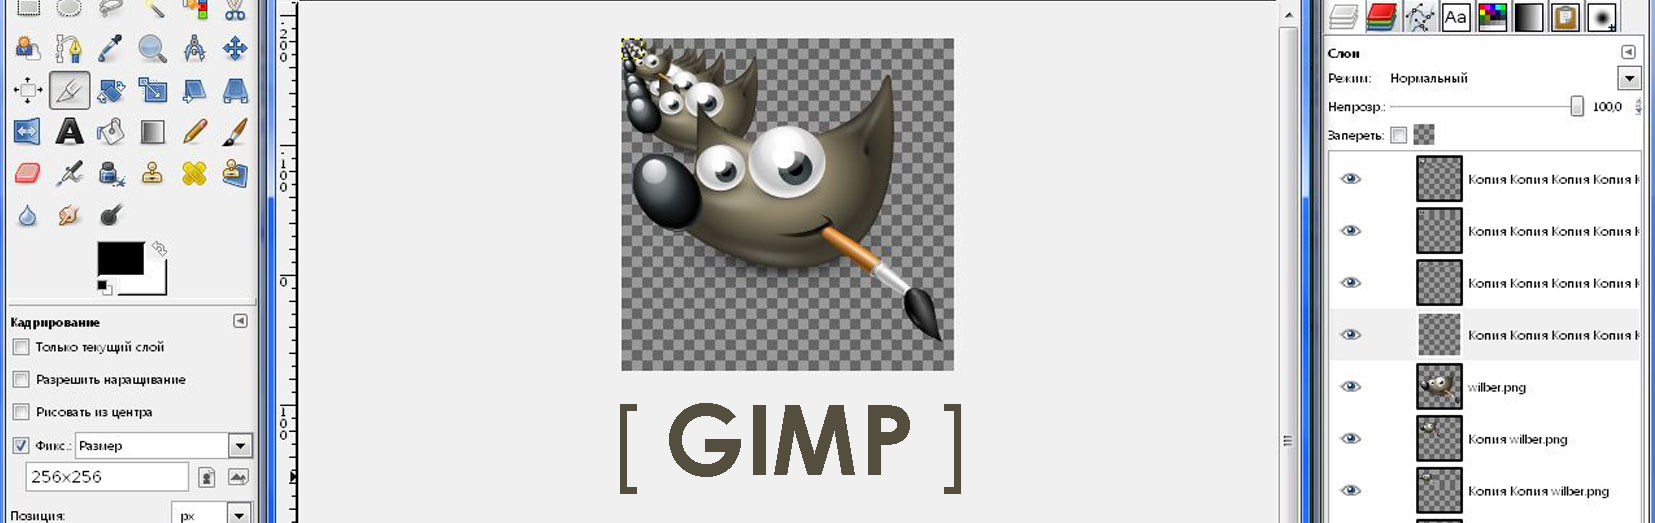 gimp vs photoshop with pen tablet